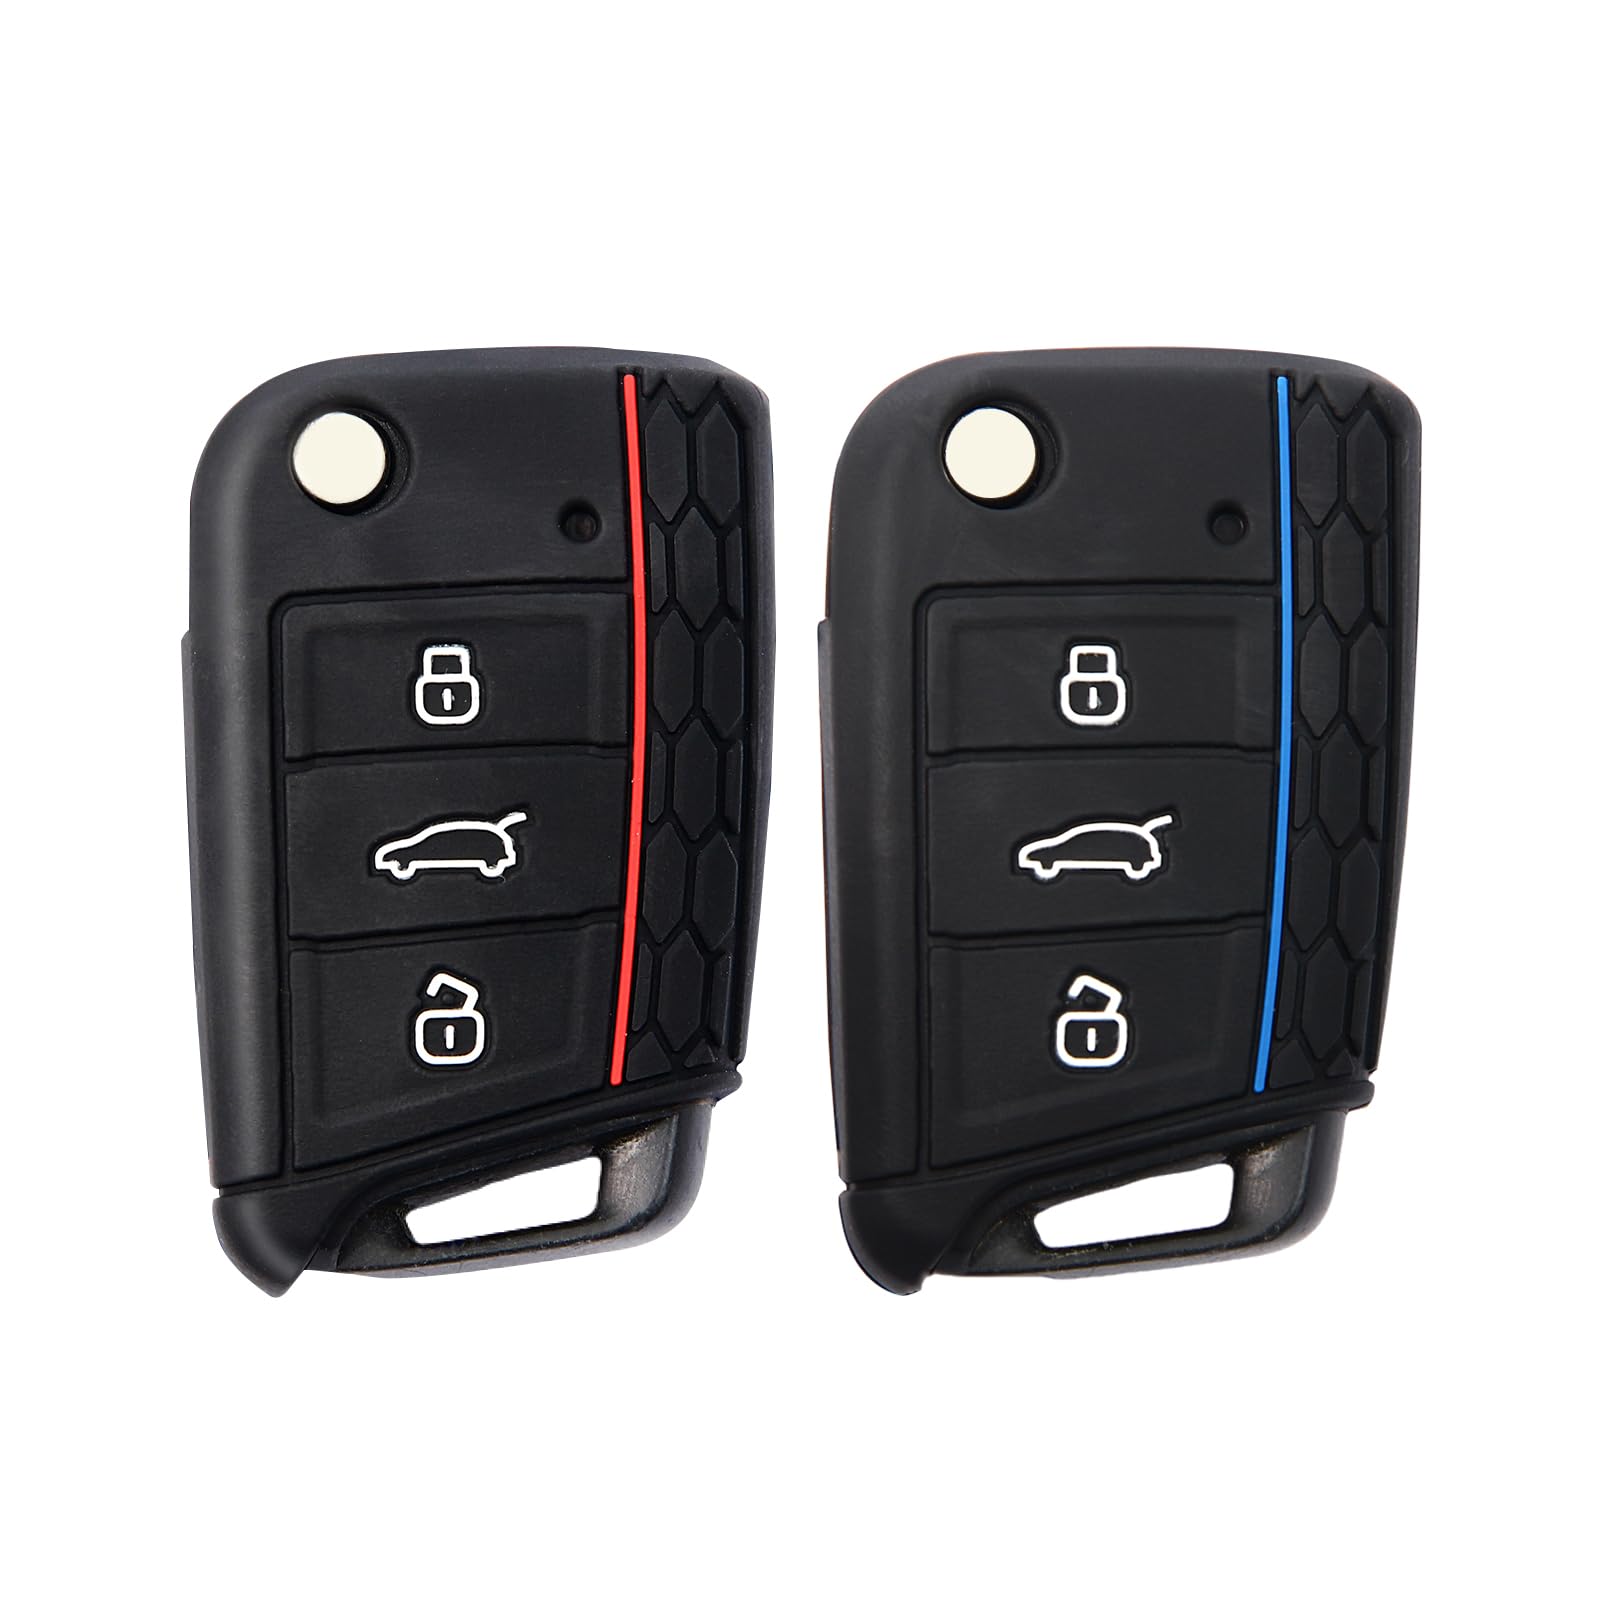 2 Stück Autoschlüssel Hülle, Schlüsselbox ,Autoschlüssel Schutzhülle kompatibel mit VW Golf 7、Polo、Tiguan、Skoda 3-Tasten Schlüsselhülle (Schwarz Rot + Schwarz Blau) von Mythosurge